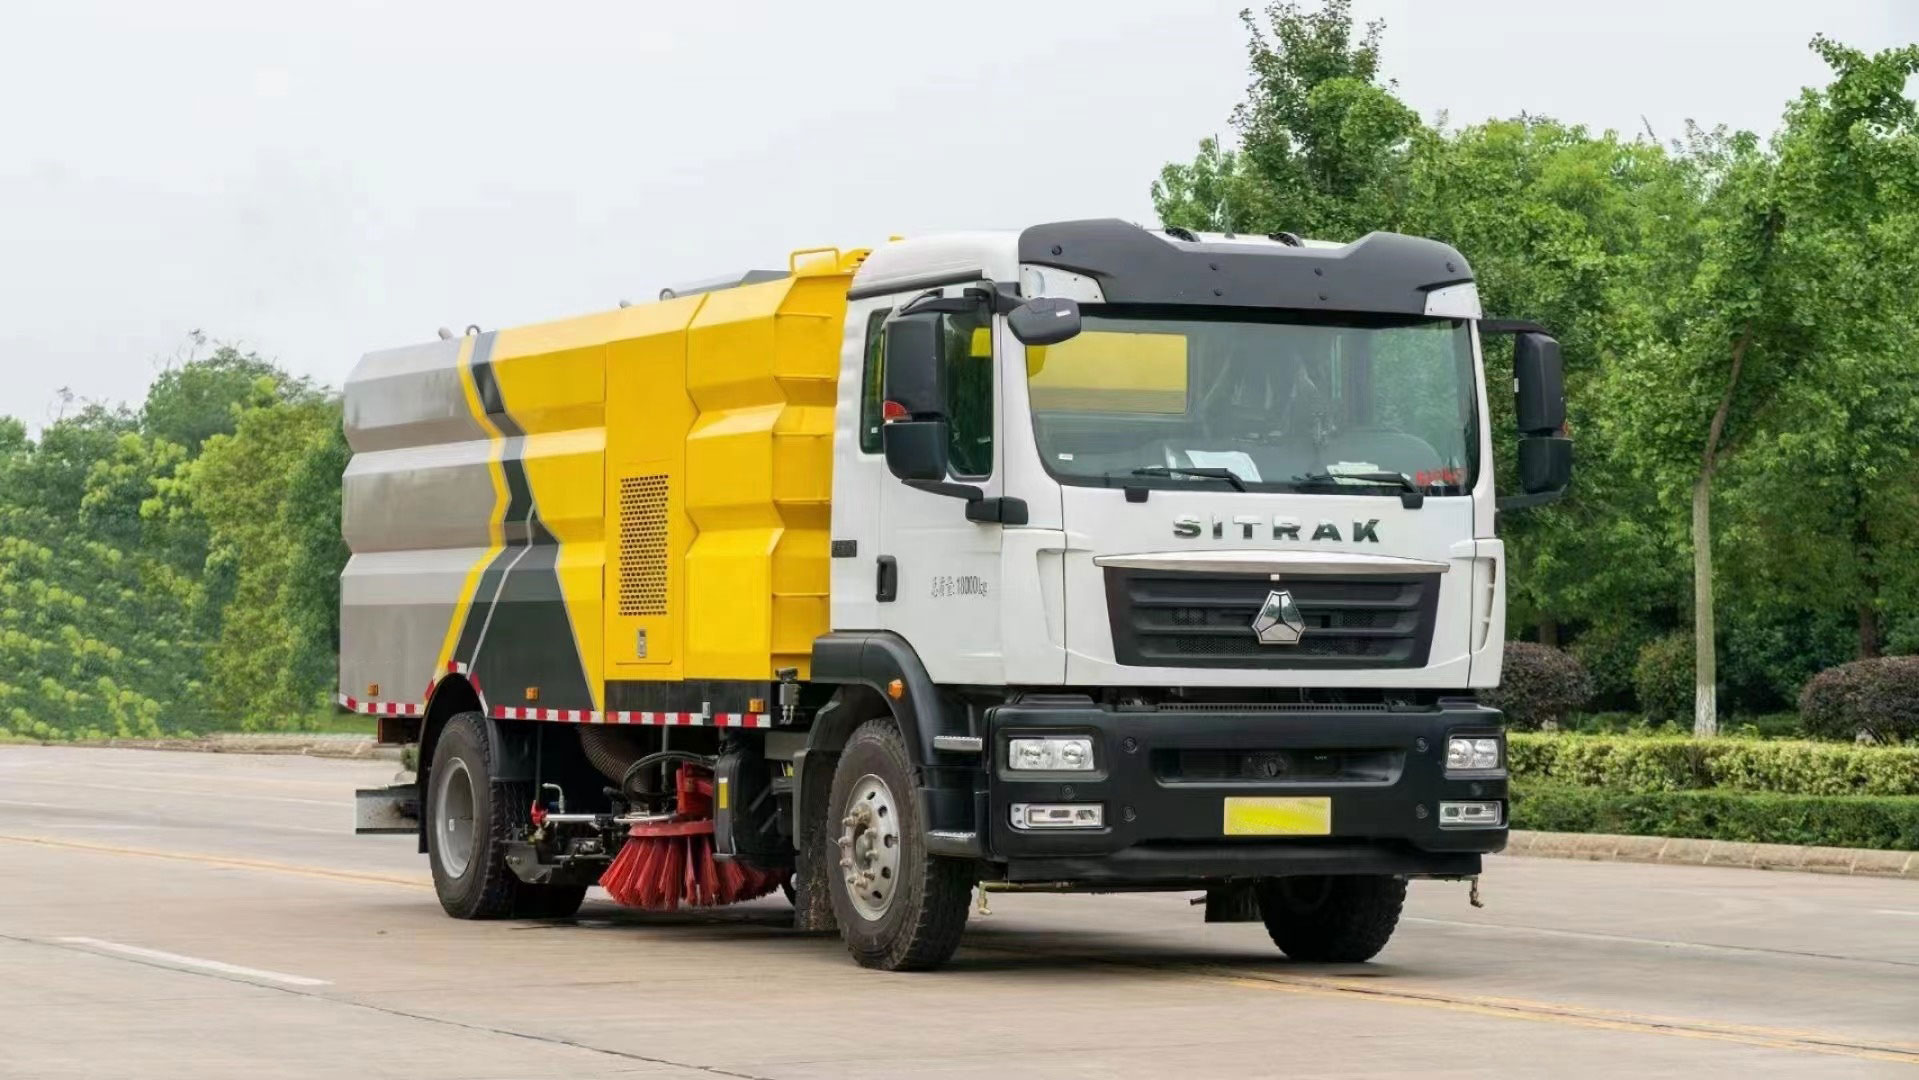 Sistemas de succión Uso multiescena del camión barredor para limpieza